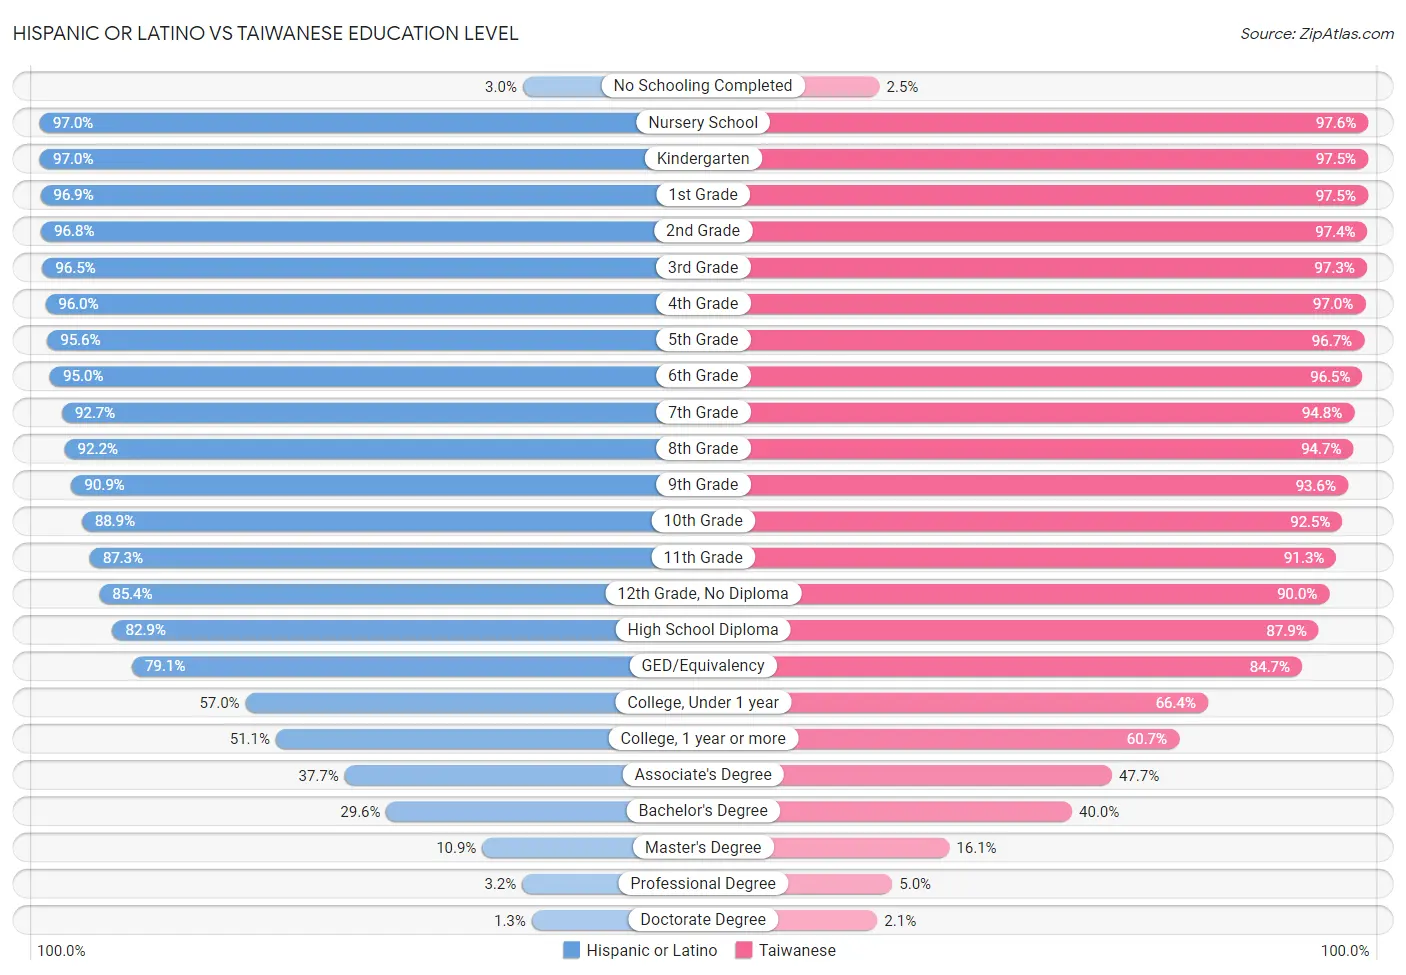 Hispanic or Latino vs Taiwanese Education Level